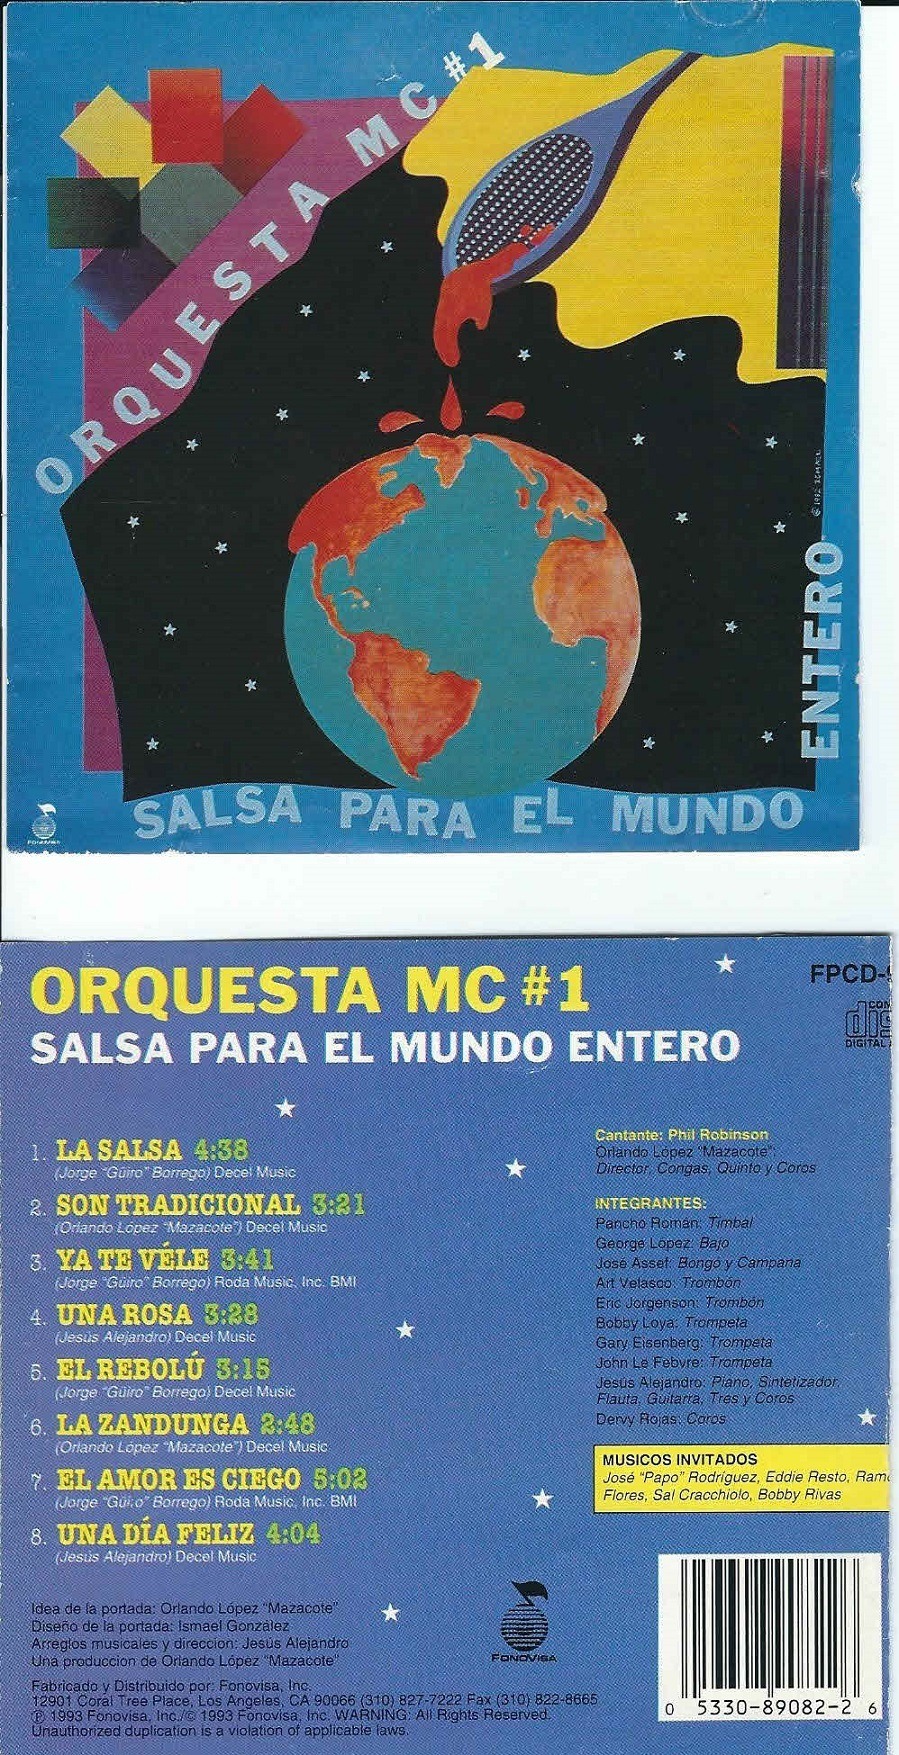 Discography Salsa Para El Mundo Entero